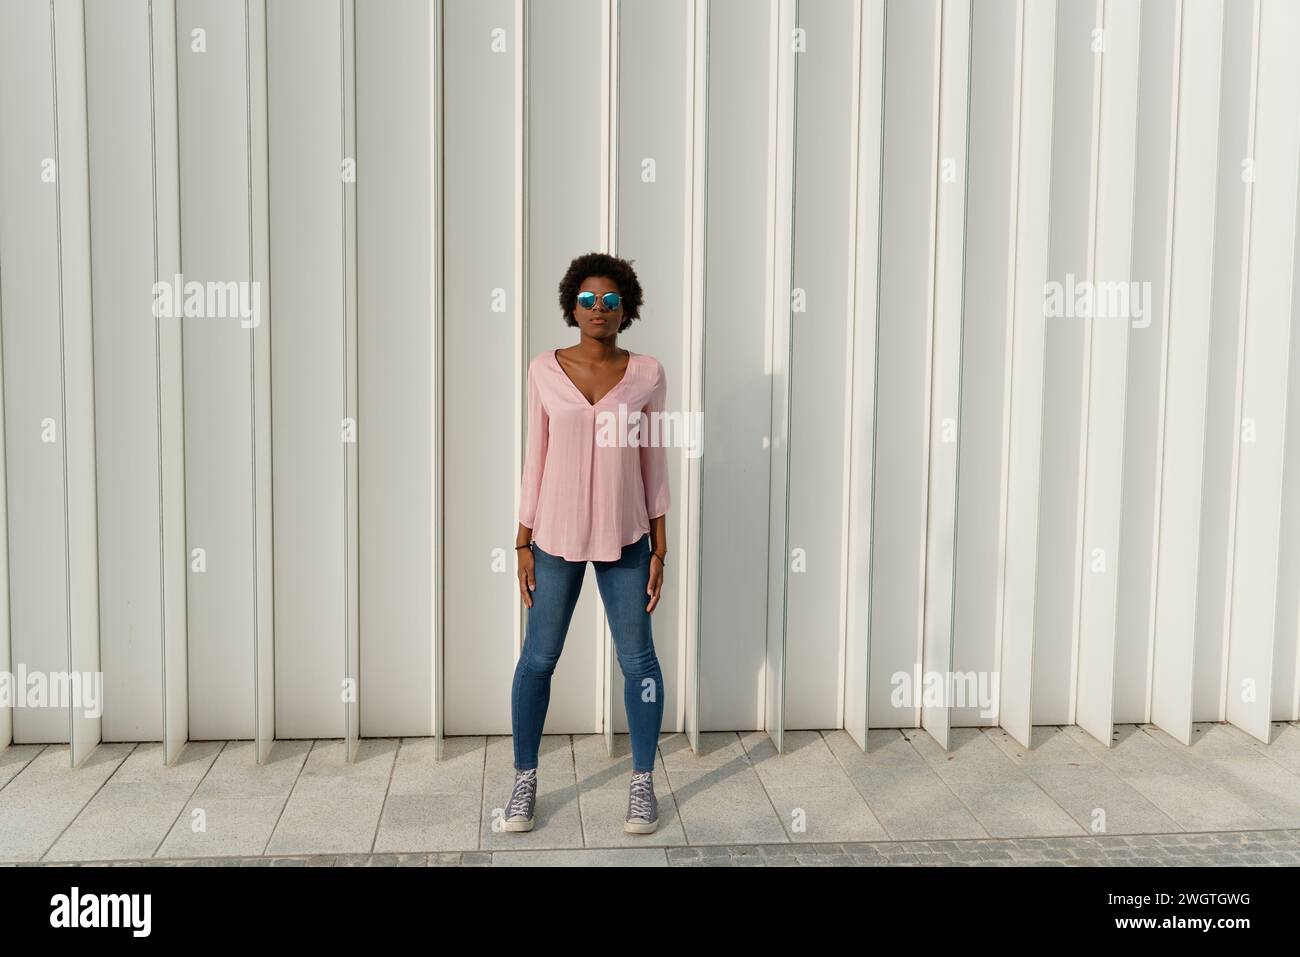 Black girl outdoors, Milano, Italy. Stock Photo